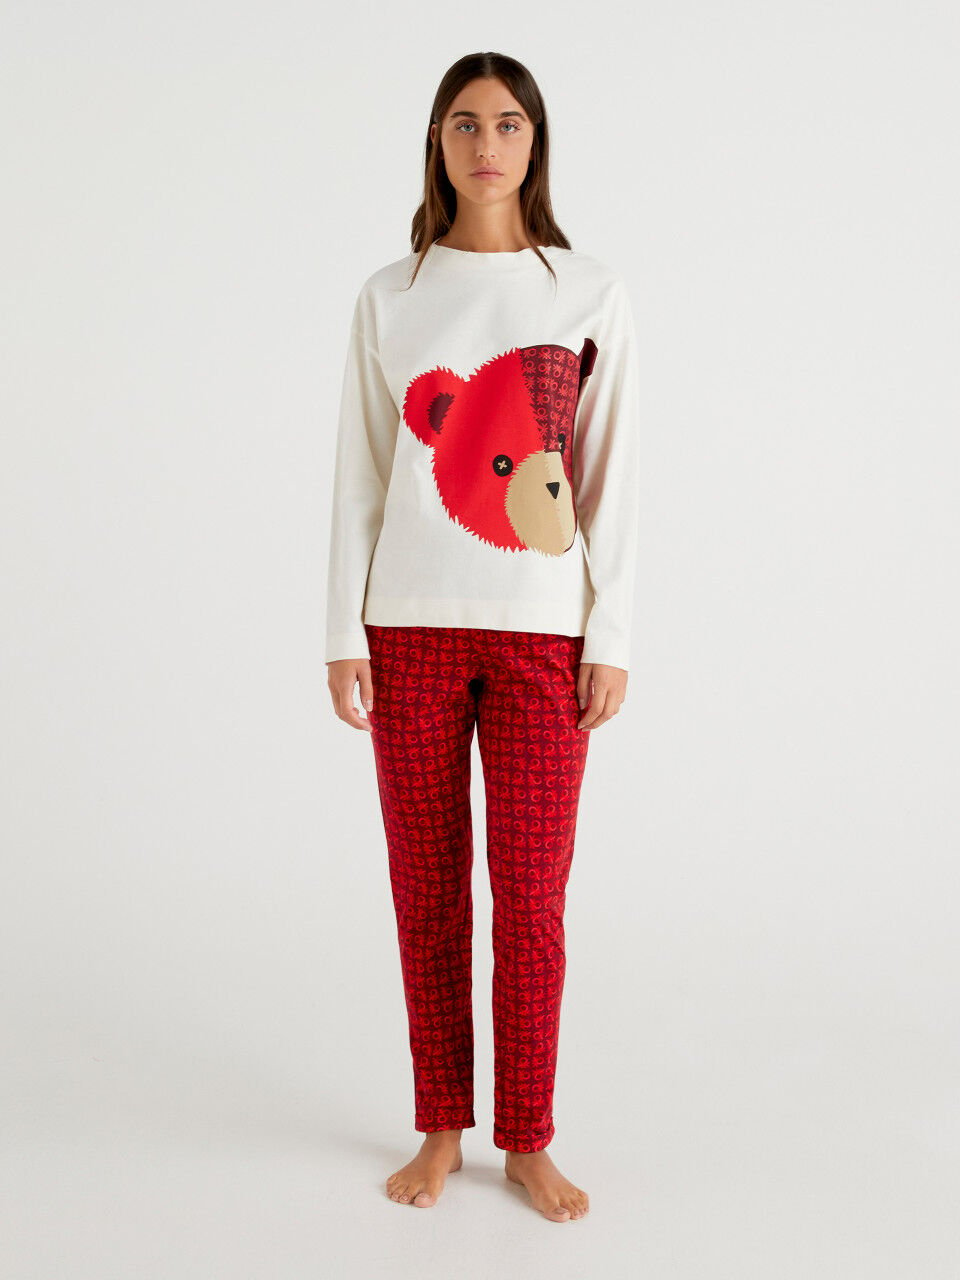 Warm pyjamas with teddy bear print